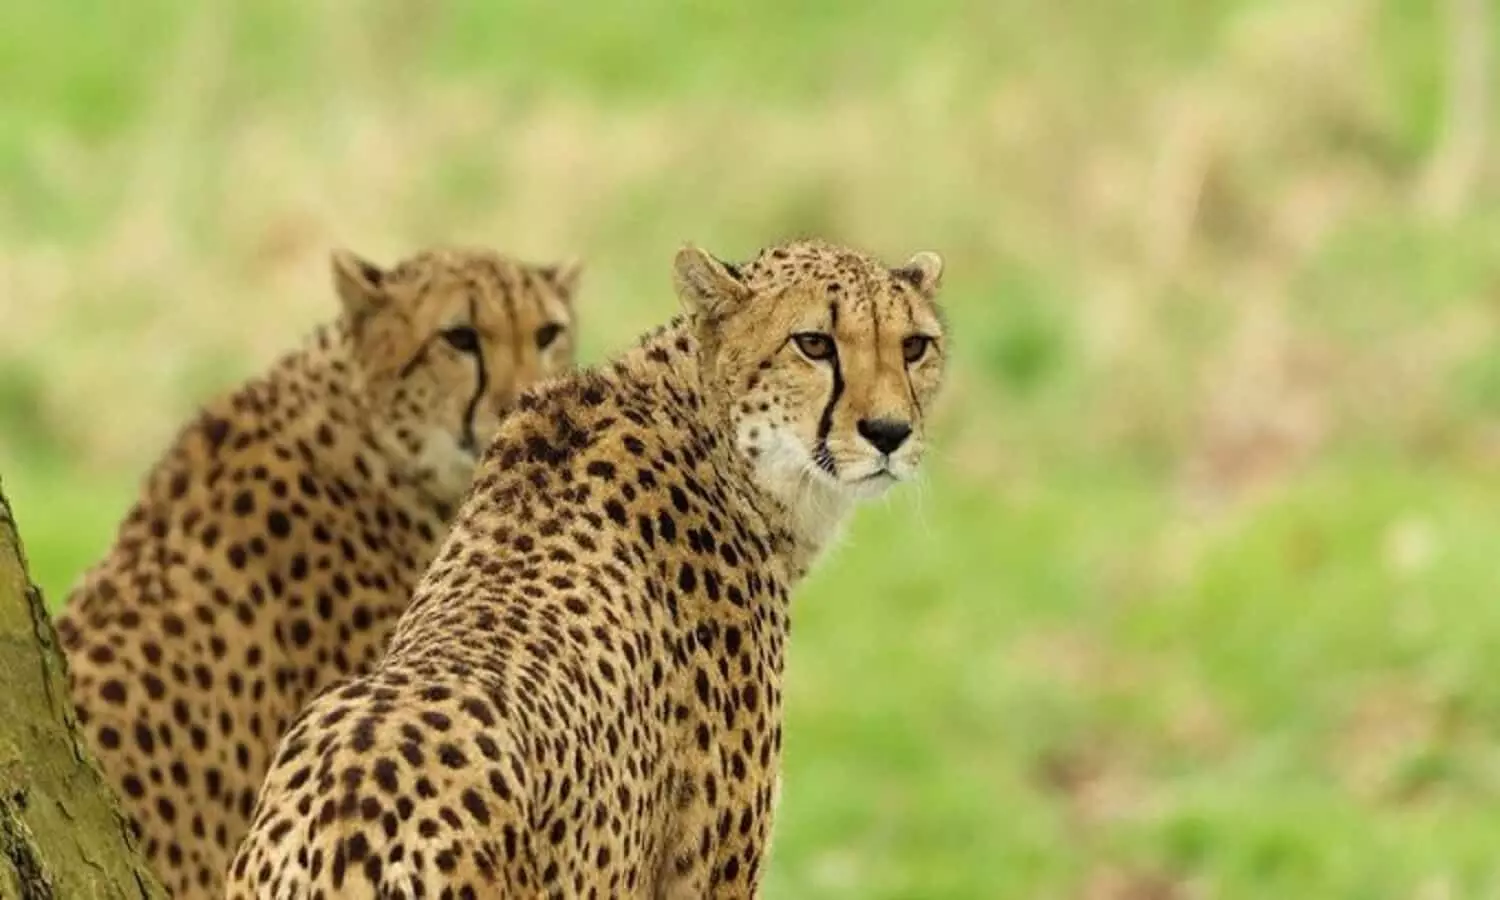 Cheetah In India: पृथ्वी पर सबसे तेज दौड़ने वाला प्राणी 70 वर्ष बाद लौटेगा भारत की सरजमी पर, एमपी के कूनों पार्क मे रखे जायेंगे अफ्रीकी चीते